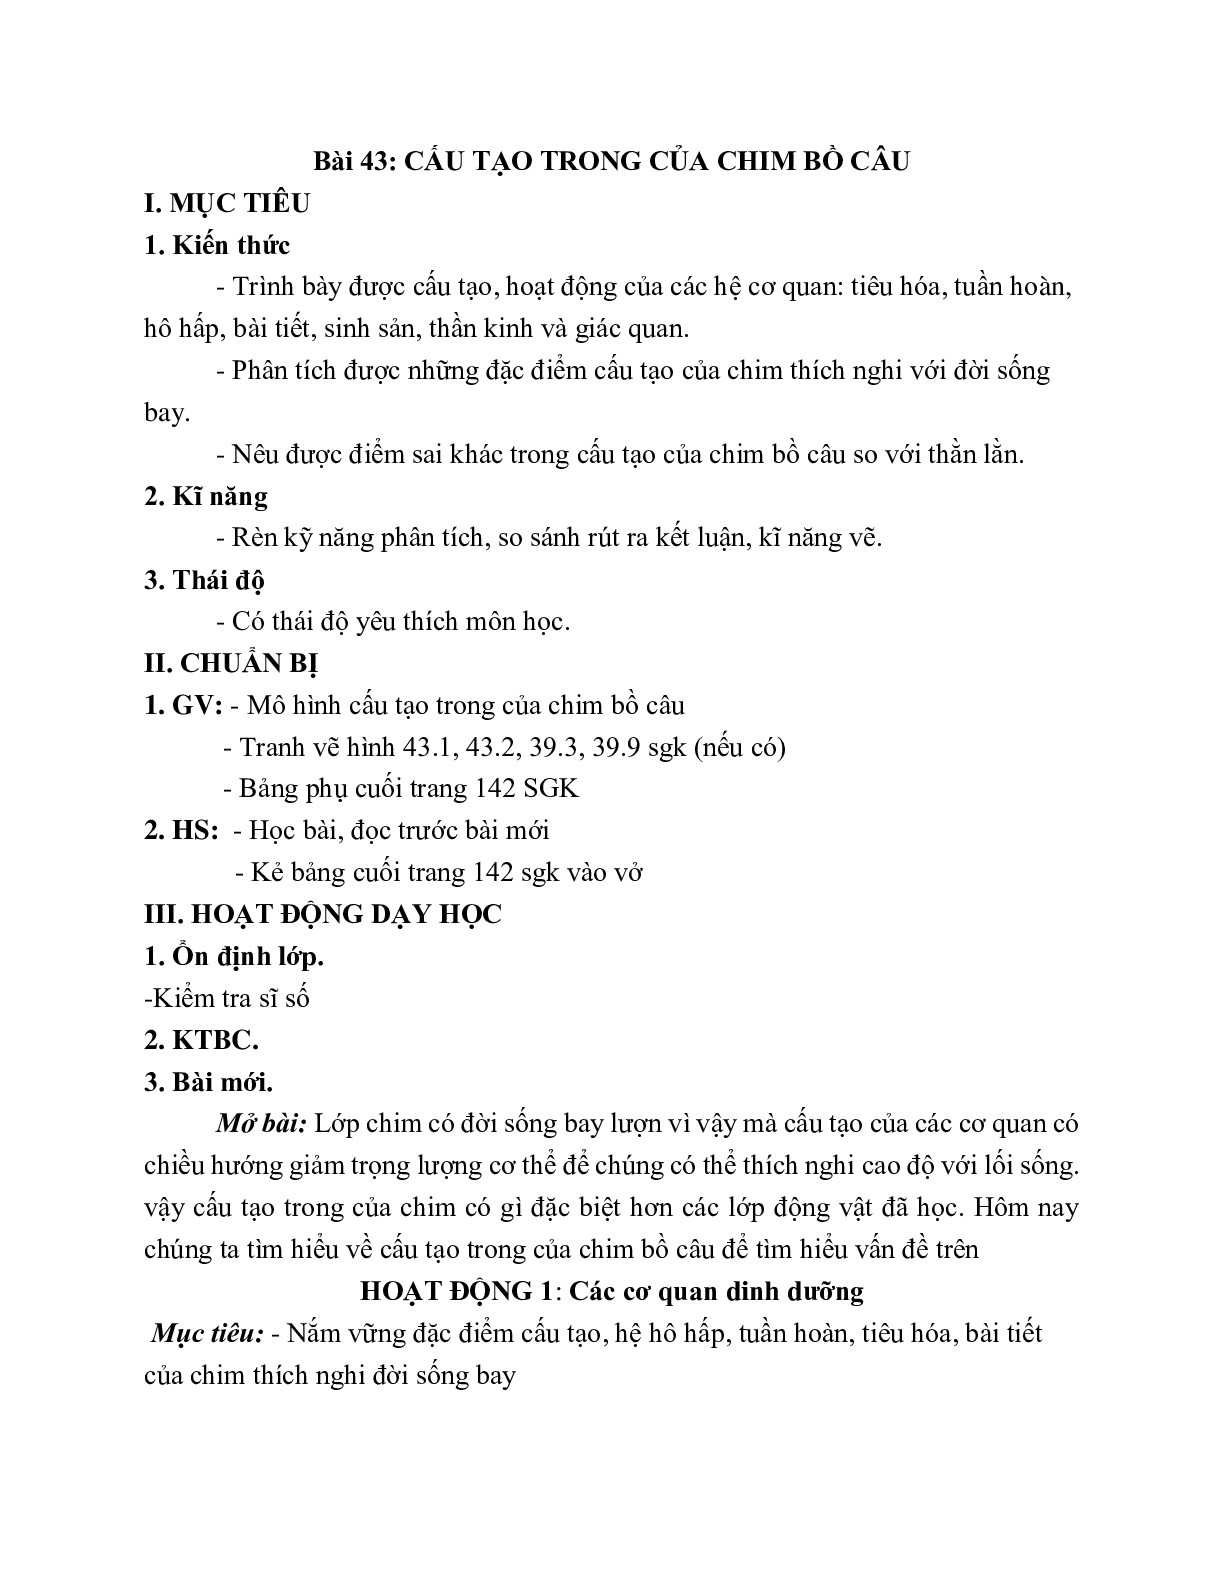 Giáo án Sinh học 7 Bài 43: Cấu tạo trong của chim bồ câu mới nhất - CV5512 (trang 1)